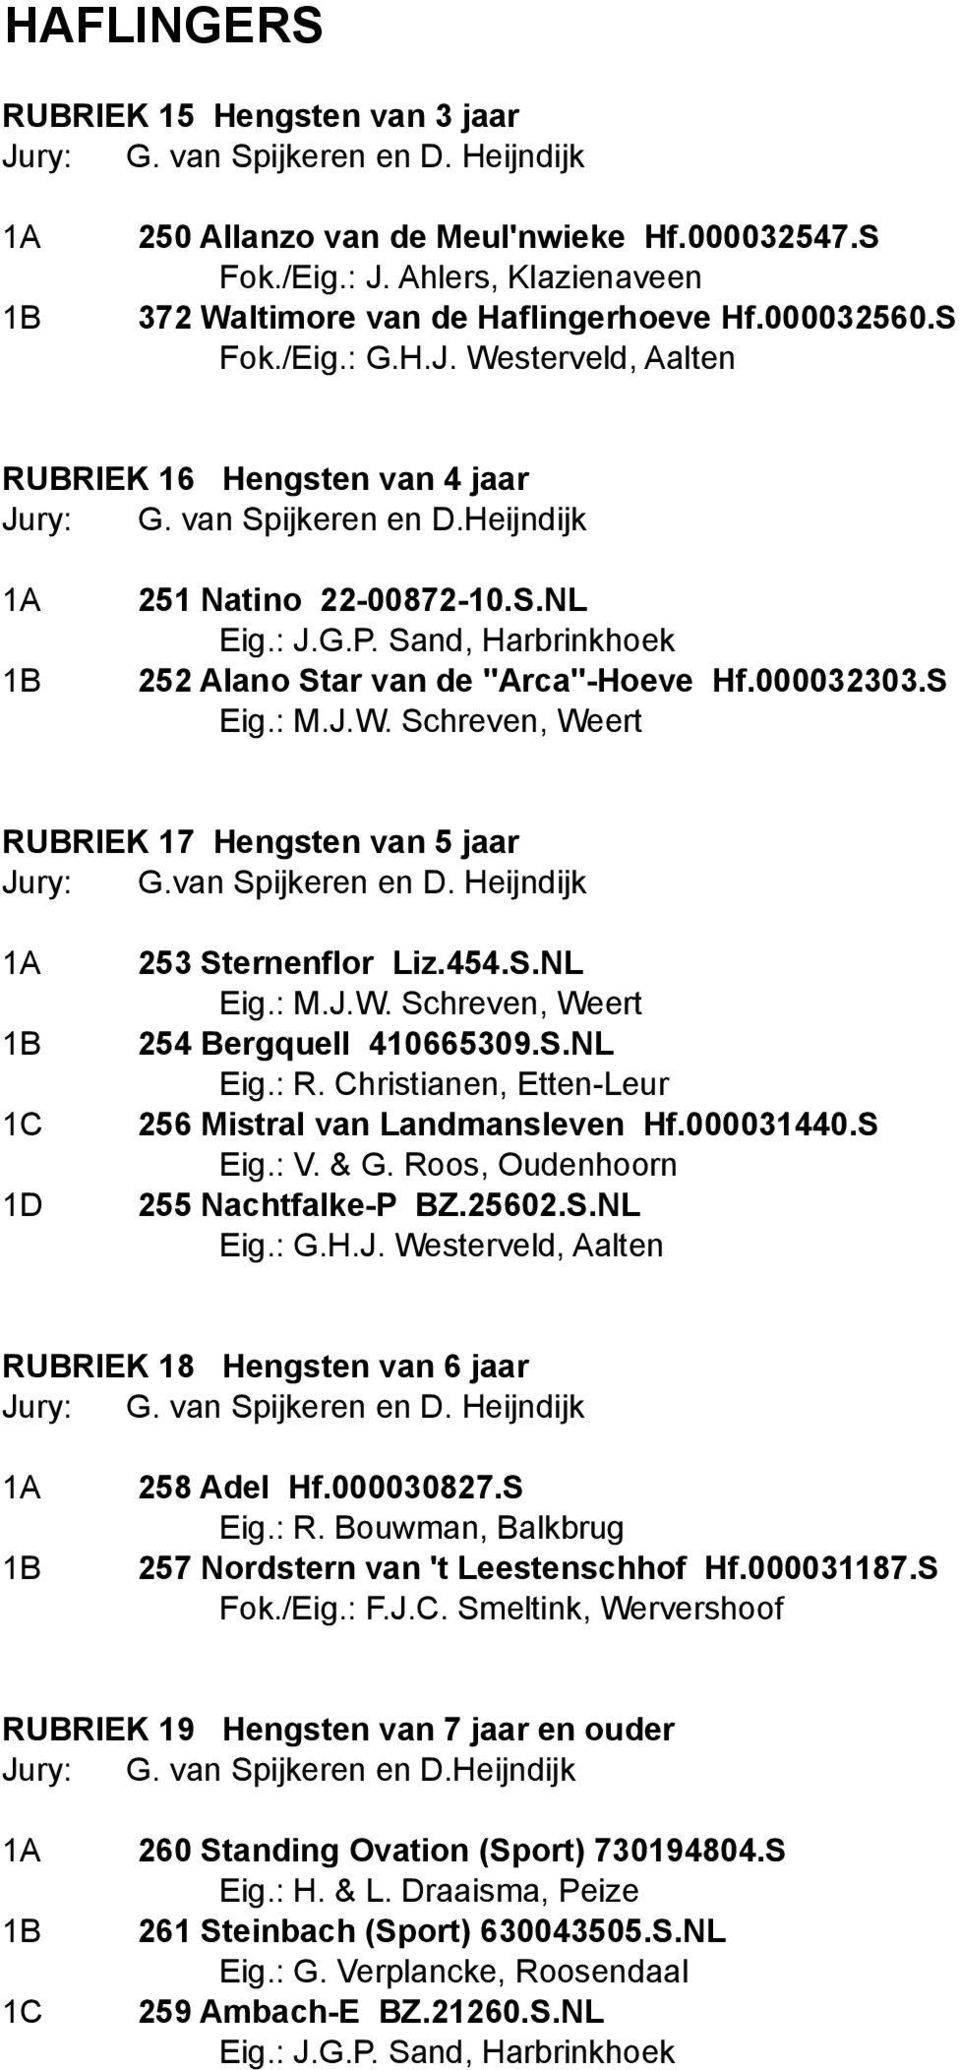 Heijndijk 251 Natino 22-00872-10.S.NL Eig.: J.G.P. Sand, Harbrinkhoek 252 Alano Star van de "Arca"-Hoeve Hf.000032303.S Eig.: M.J.W. Schreven, Weert RUBRIEK 17 Hengsten van 5 jaar Jury: G.